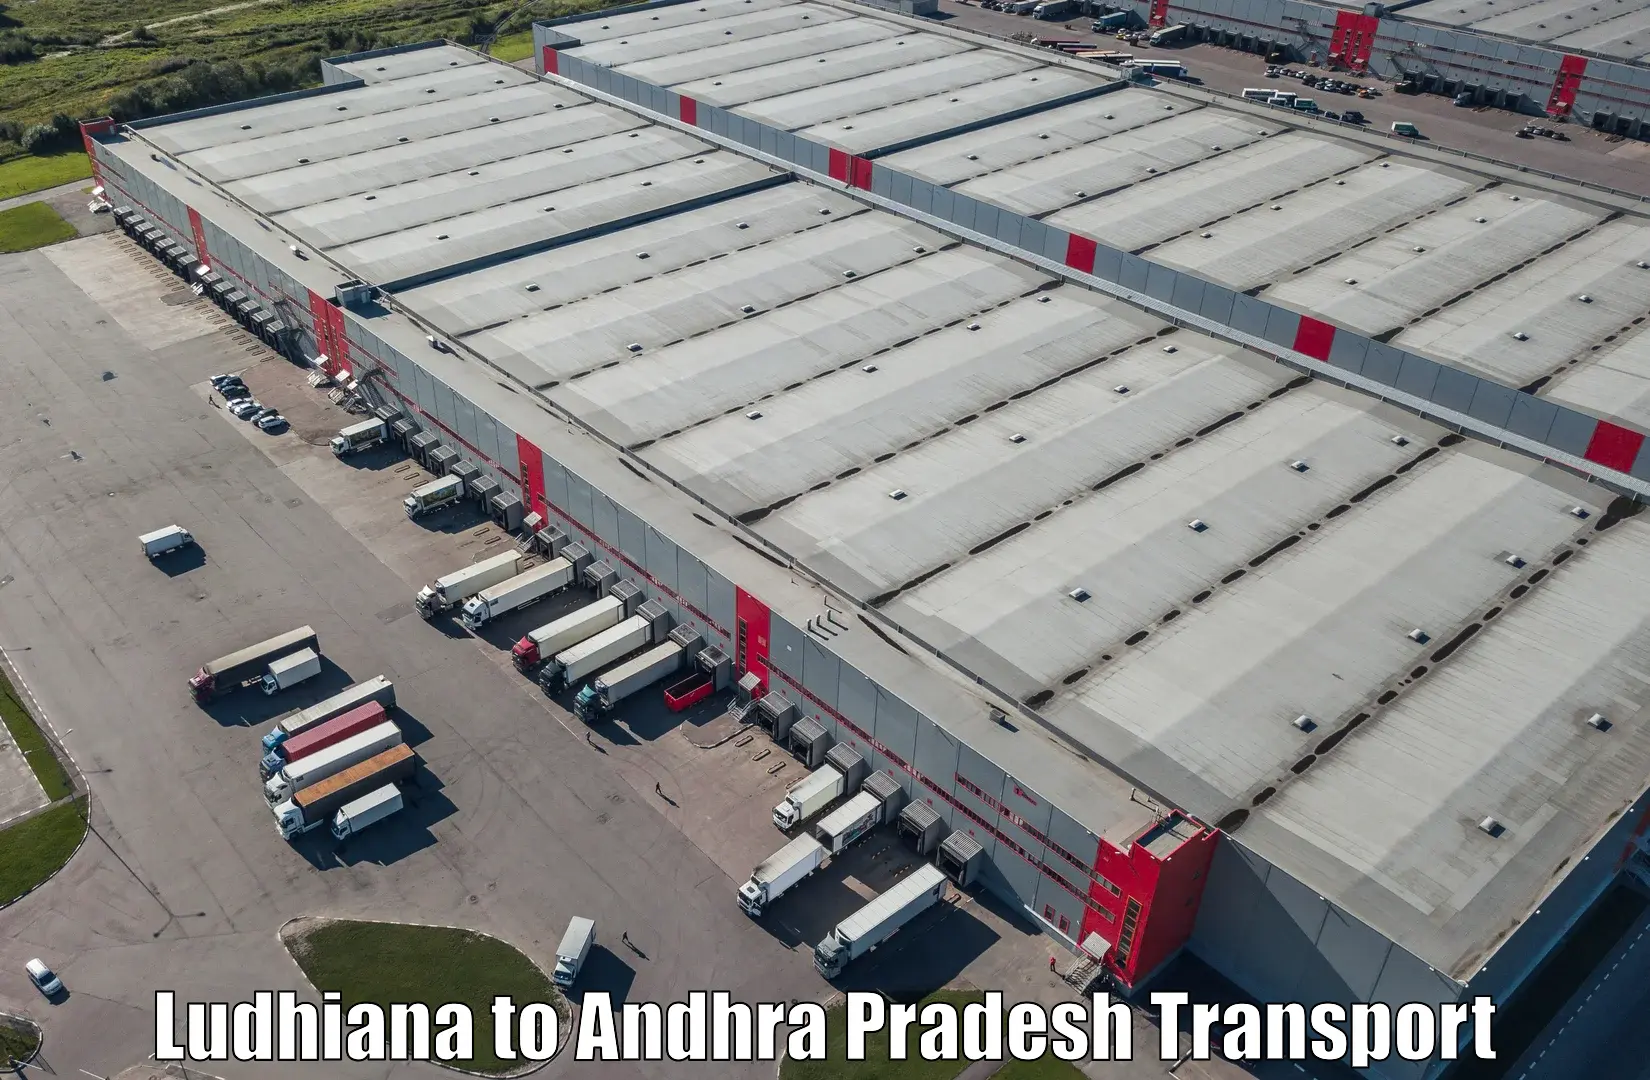 Furniture transport service in Ludhiana to Challapalli